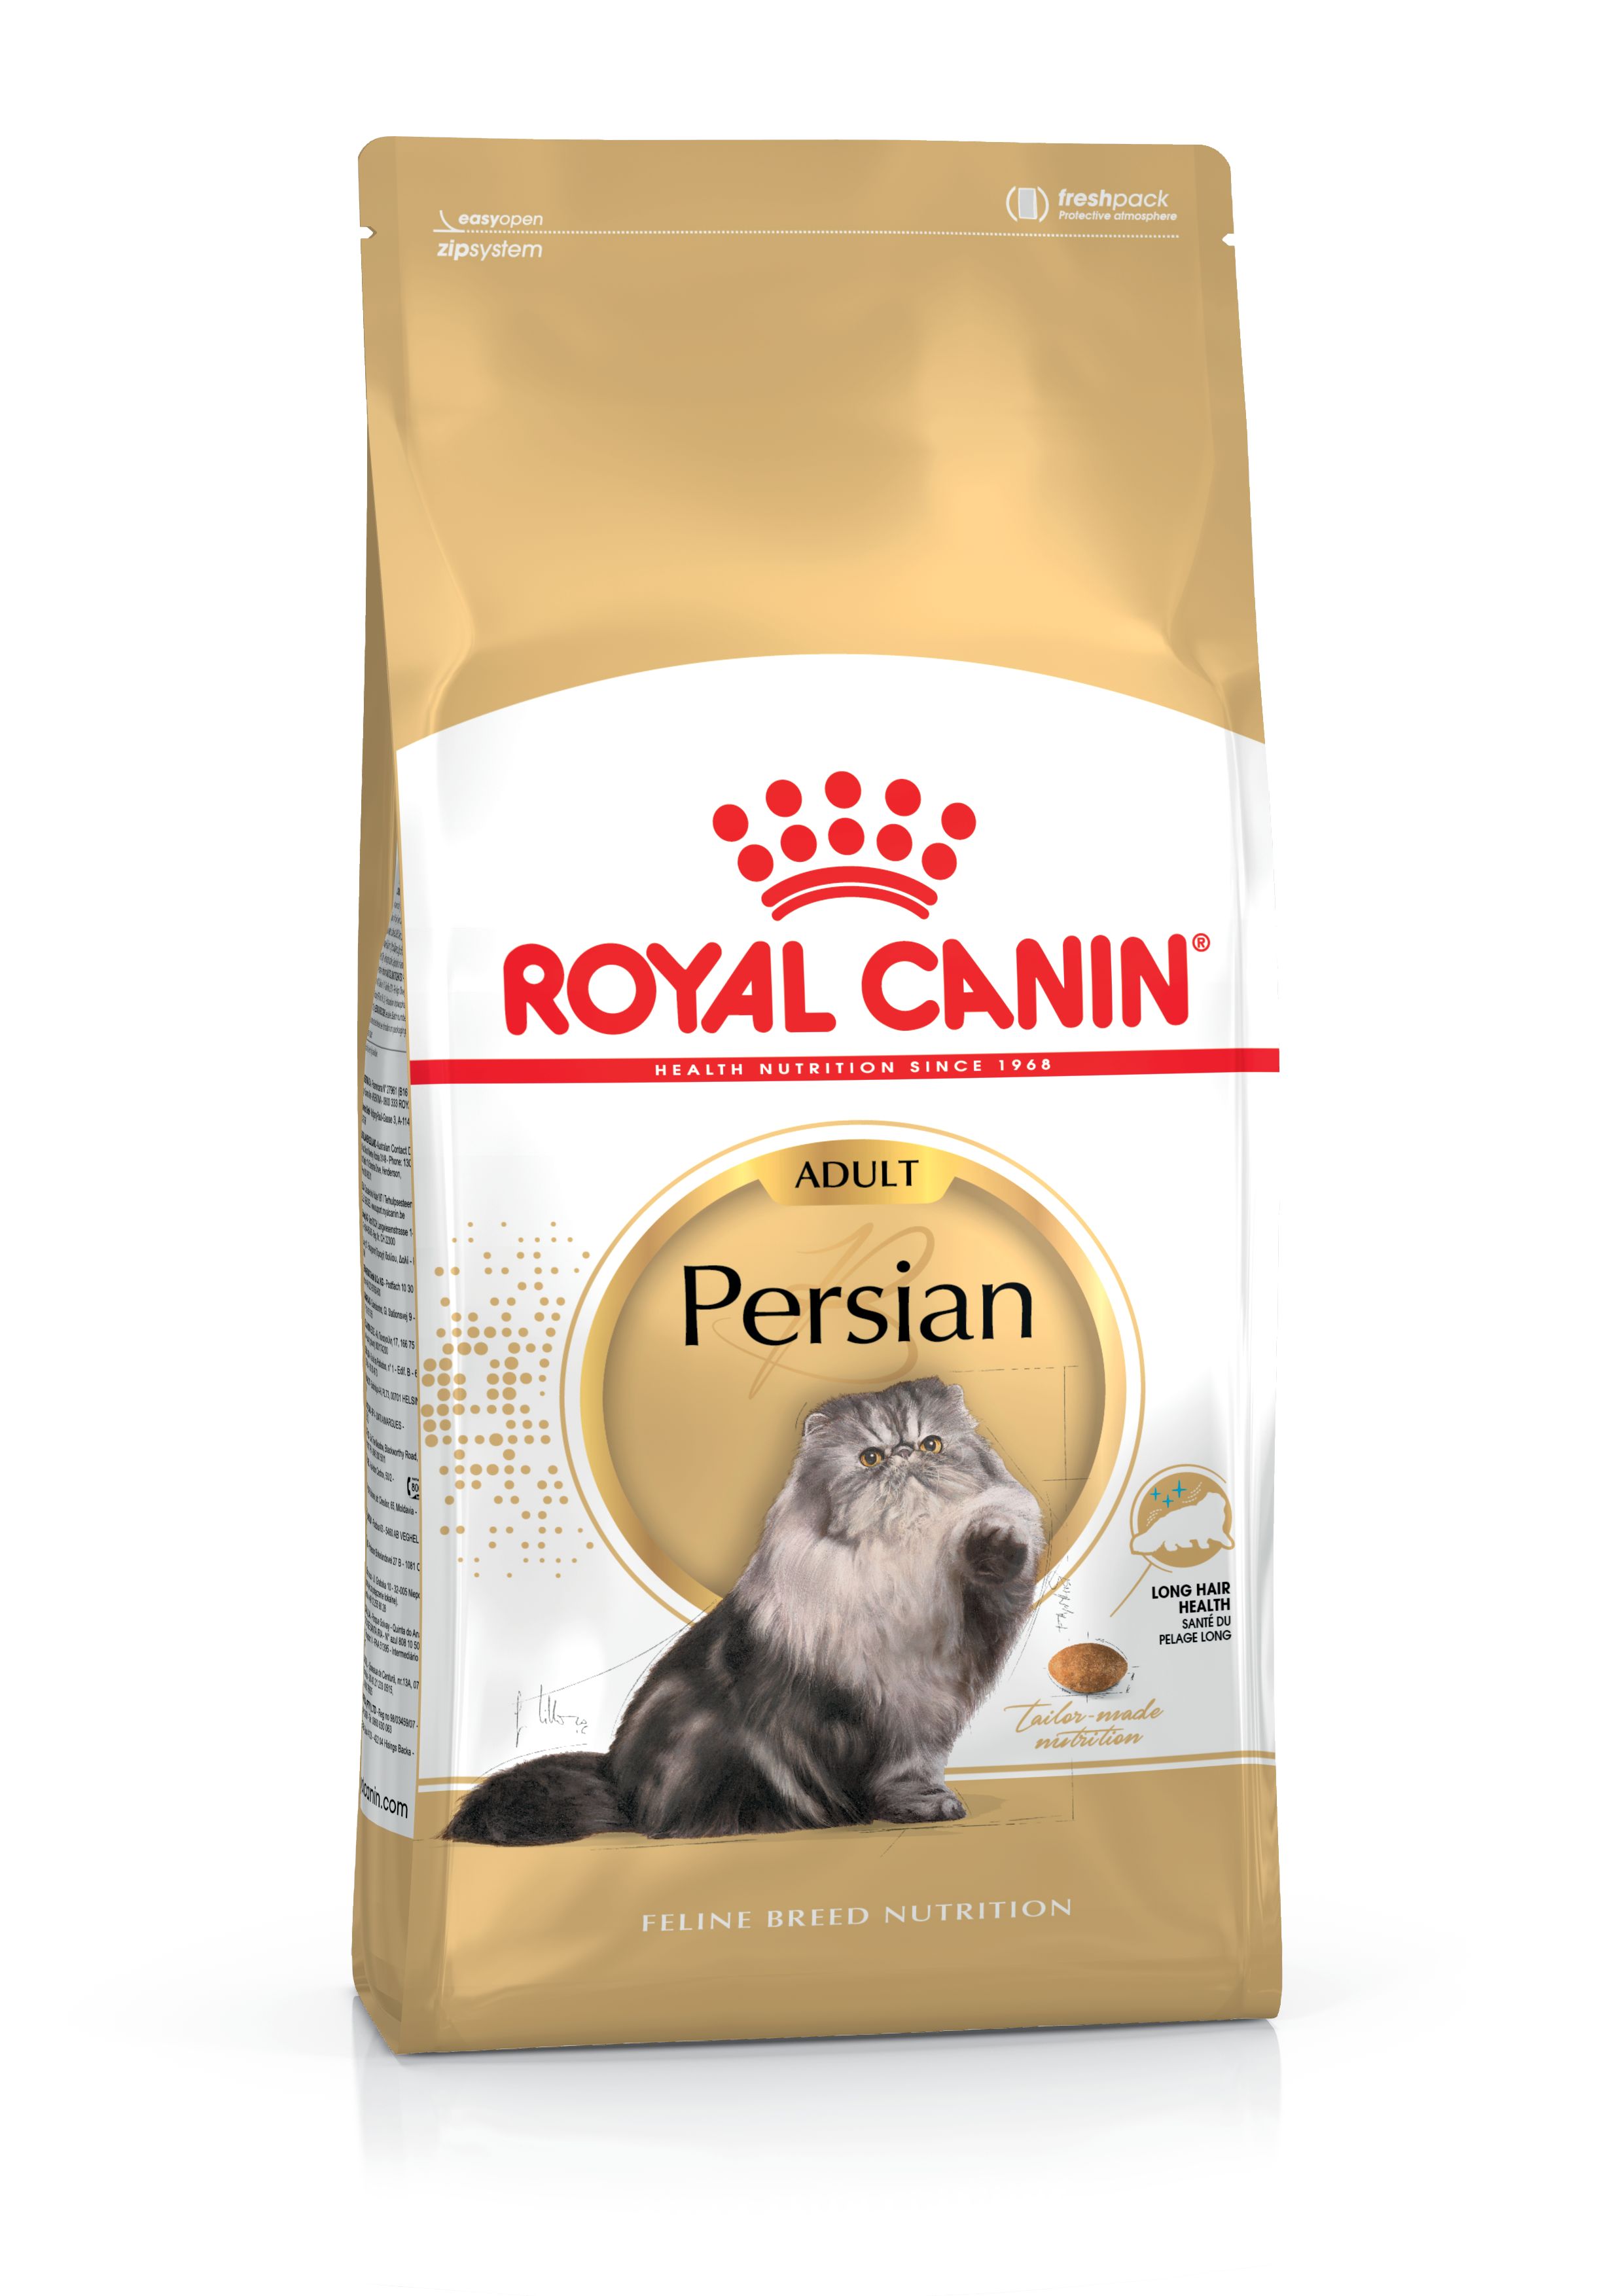 royal canin persian cat